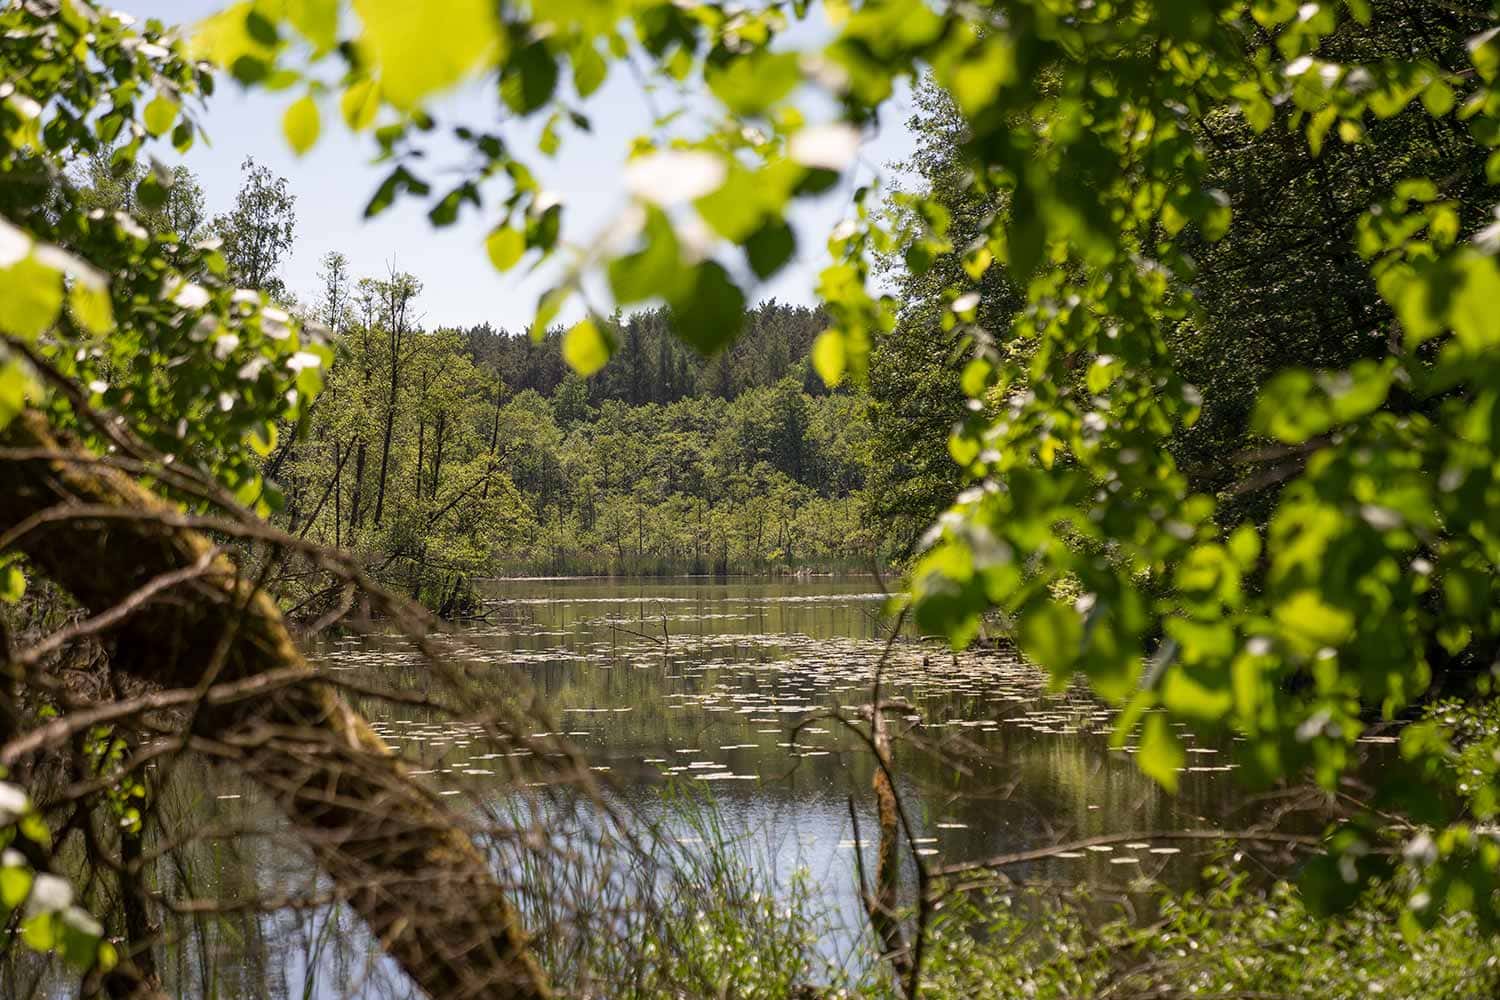 Ein See mit Wasserrosen auf der Oberfläche und Mischwald im Hintergrund. Der Naturpark Märkische Schweiz ist eine perfekte Lernumgebung für die Ausbildung der angehenden Jäger und Jägerinnen.